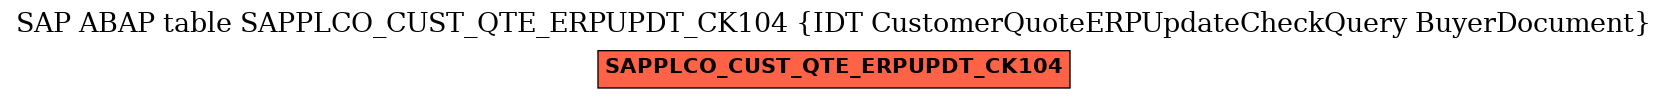 E-R Diagram for table SAPPLCO_CUST_QTE_ERPUPDT_CK104 (IDT CustomerQuoteERPUpdateCheckQuery BuyerDocument)